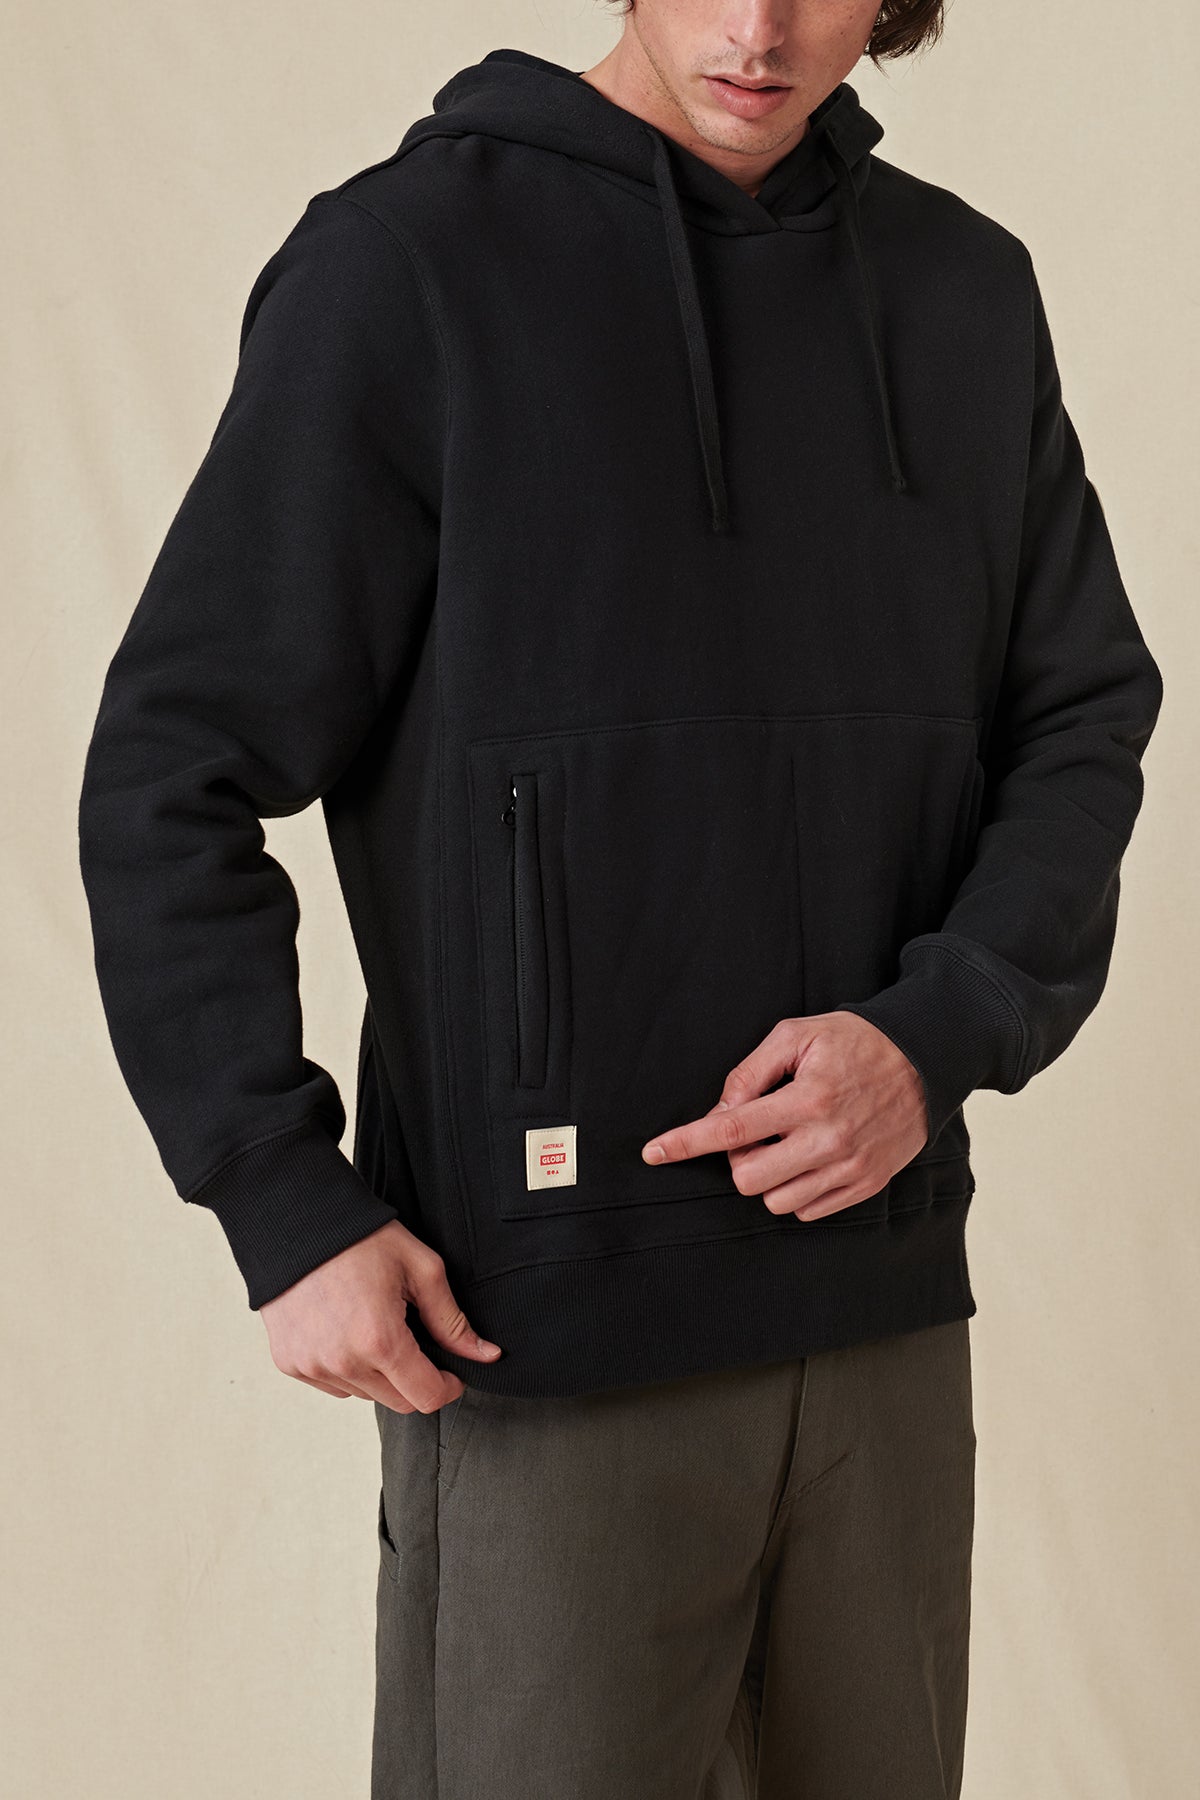 pocket profile of Black Globe hoodie